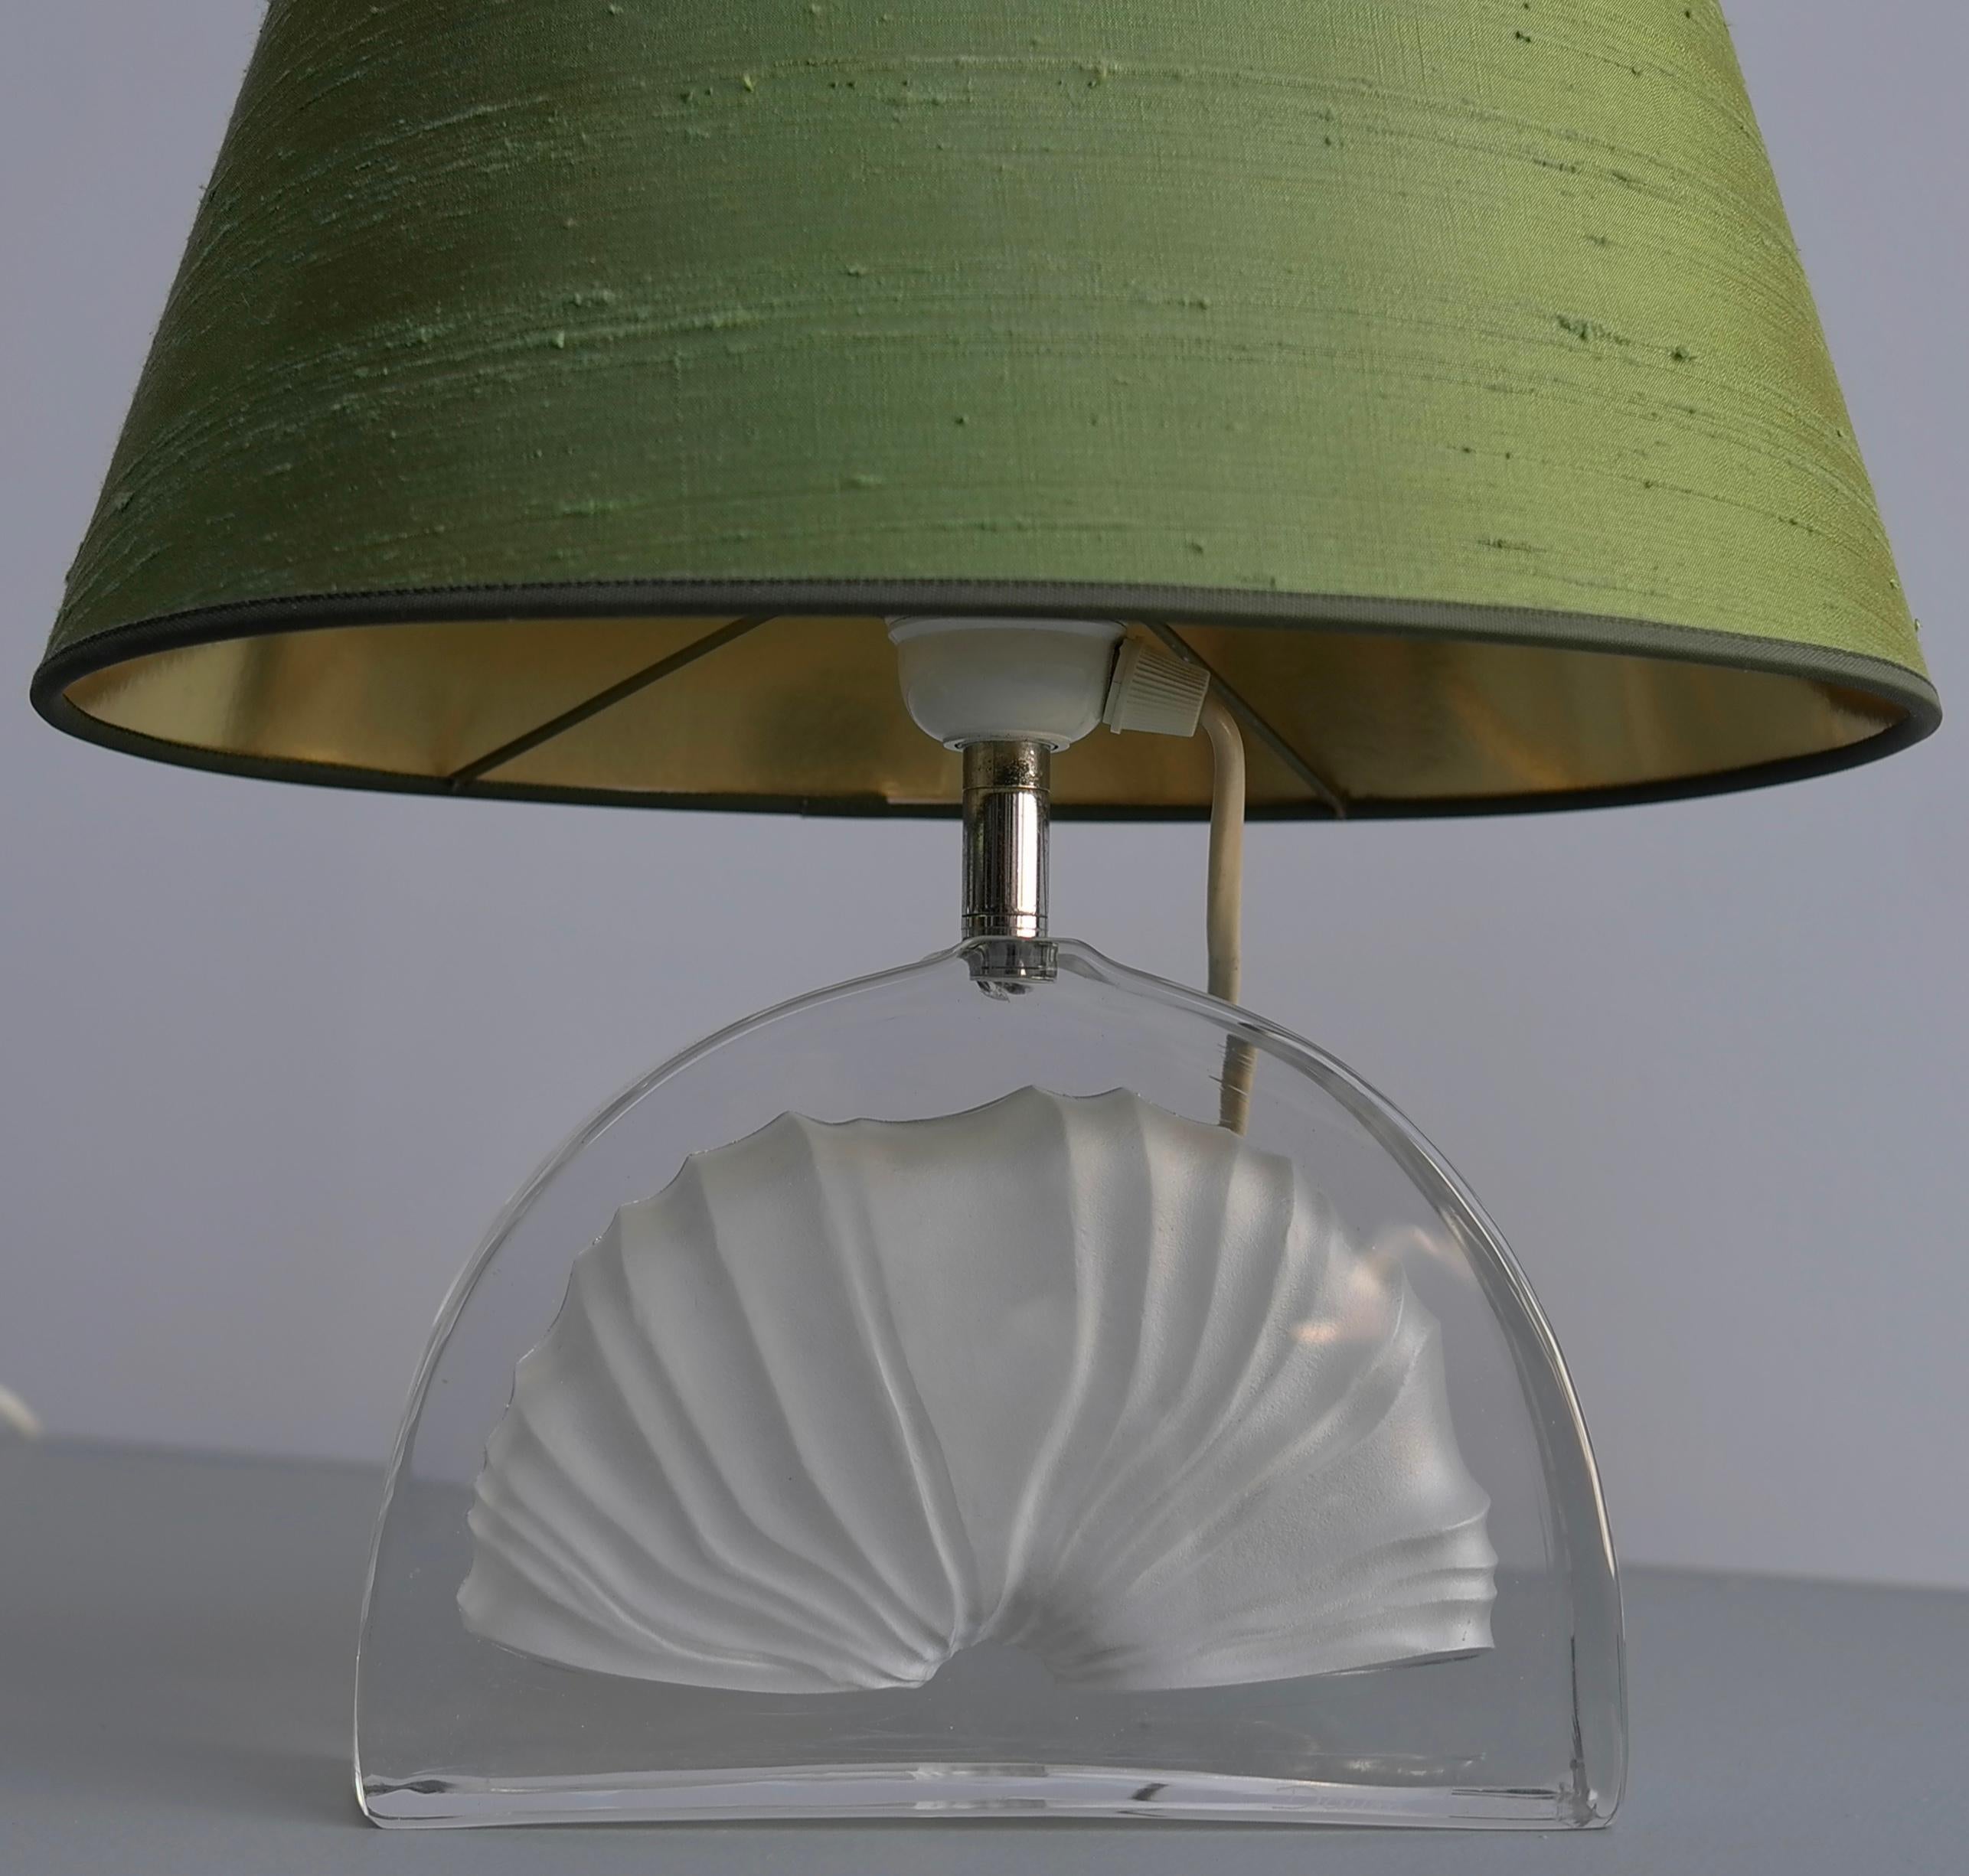 Paire de lampes de table de Daum France
Pied de lampe en cristal de forme semi-circulaire, avec motif de fossile. Les nuances sont en fine soie verte.
Les deux sont signés 